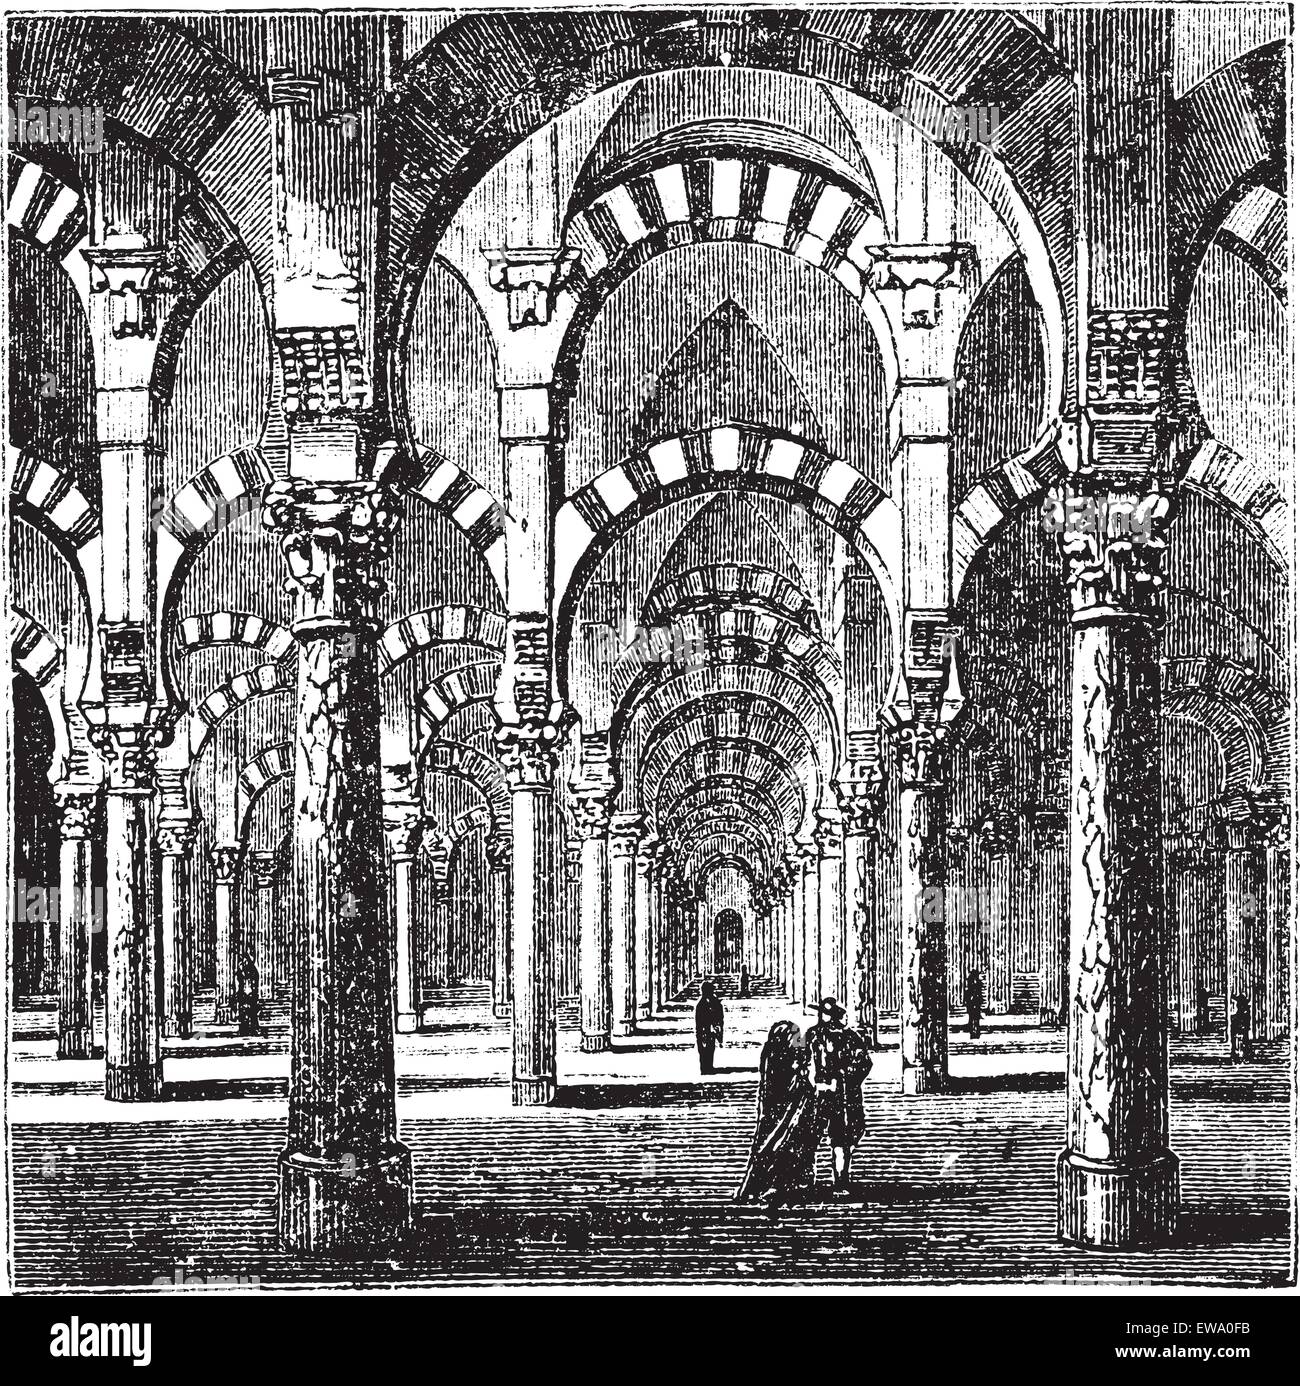 Cathedral-Mosque de Cordoue, en Andalousie, Espagne, au cours des années 1890, vintage la gravure. Vieille illustration gravée de l'intérieur Illustration de Vecteur